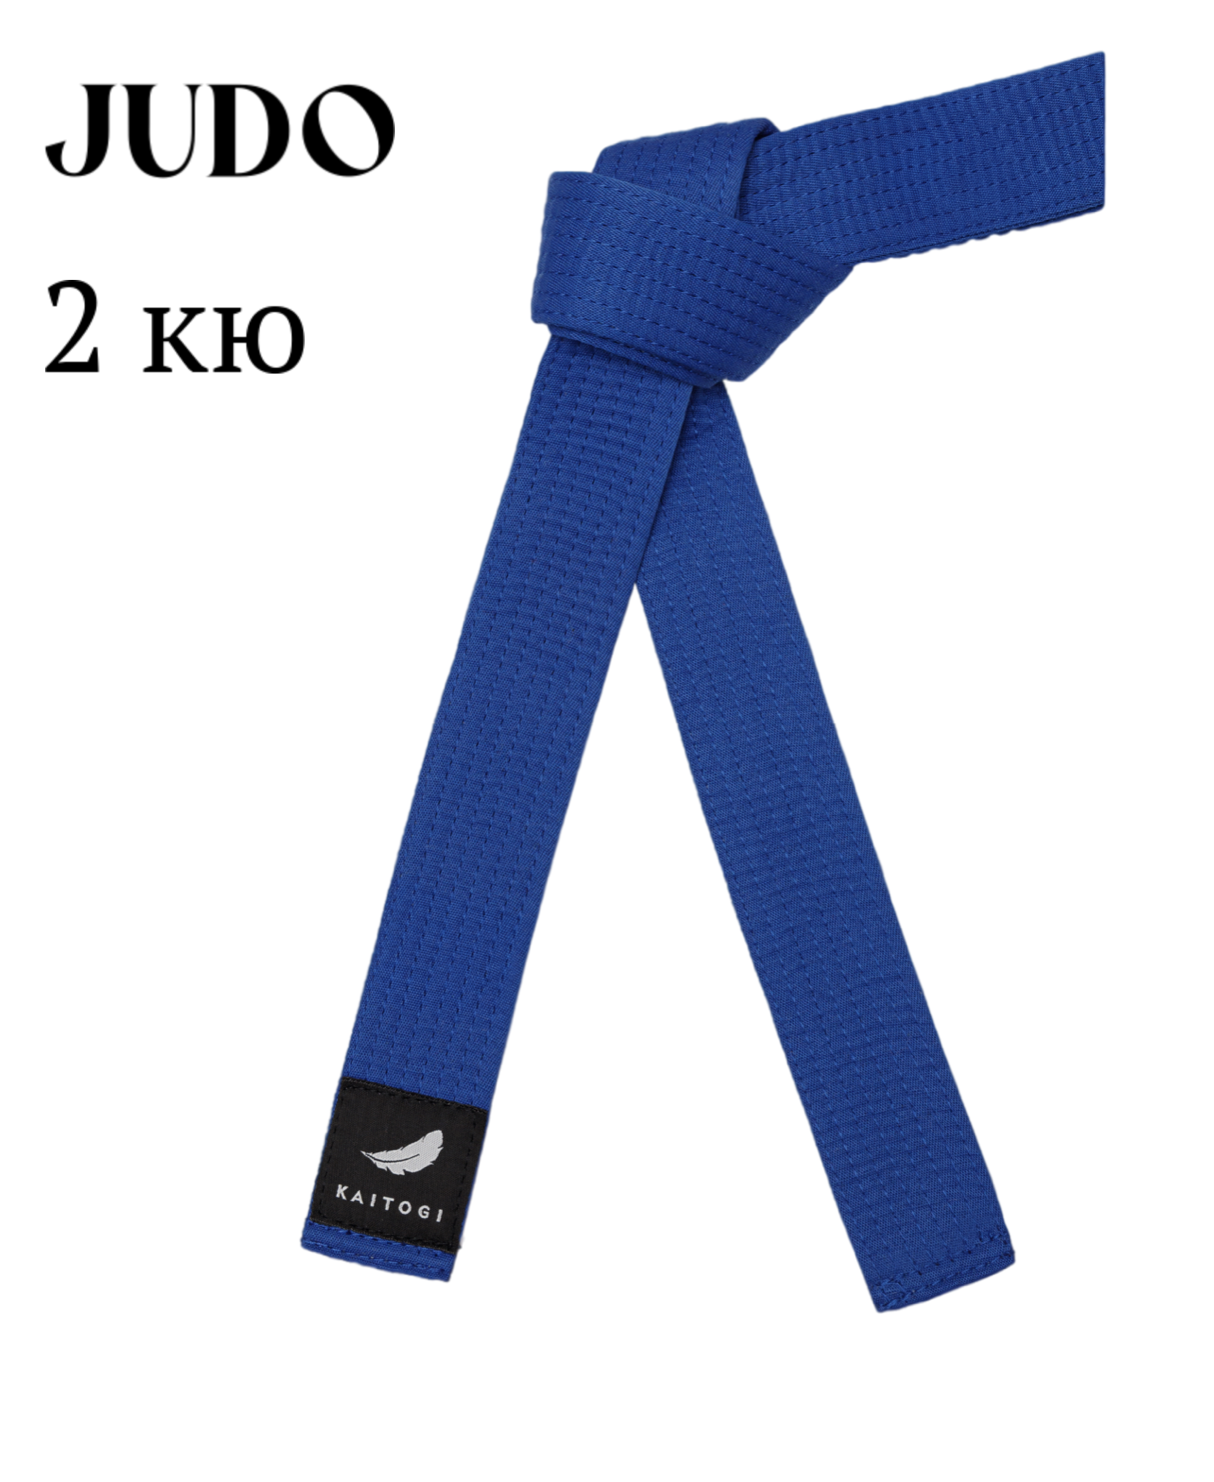 Пояс KAITOGI для дзюдо 2 кю синий 220 см